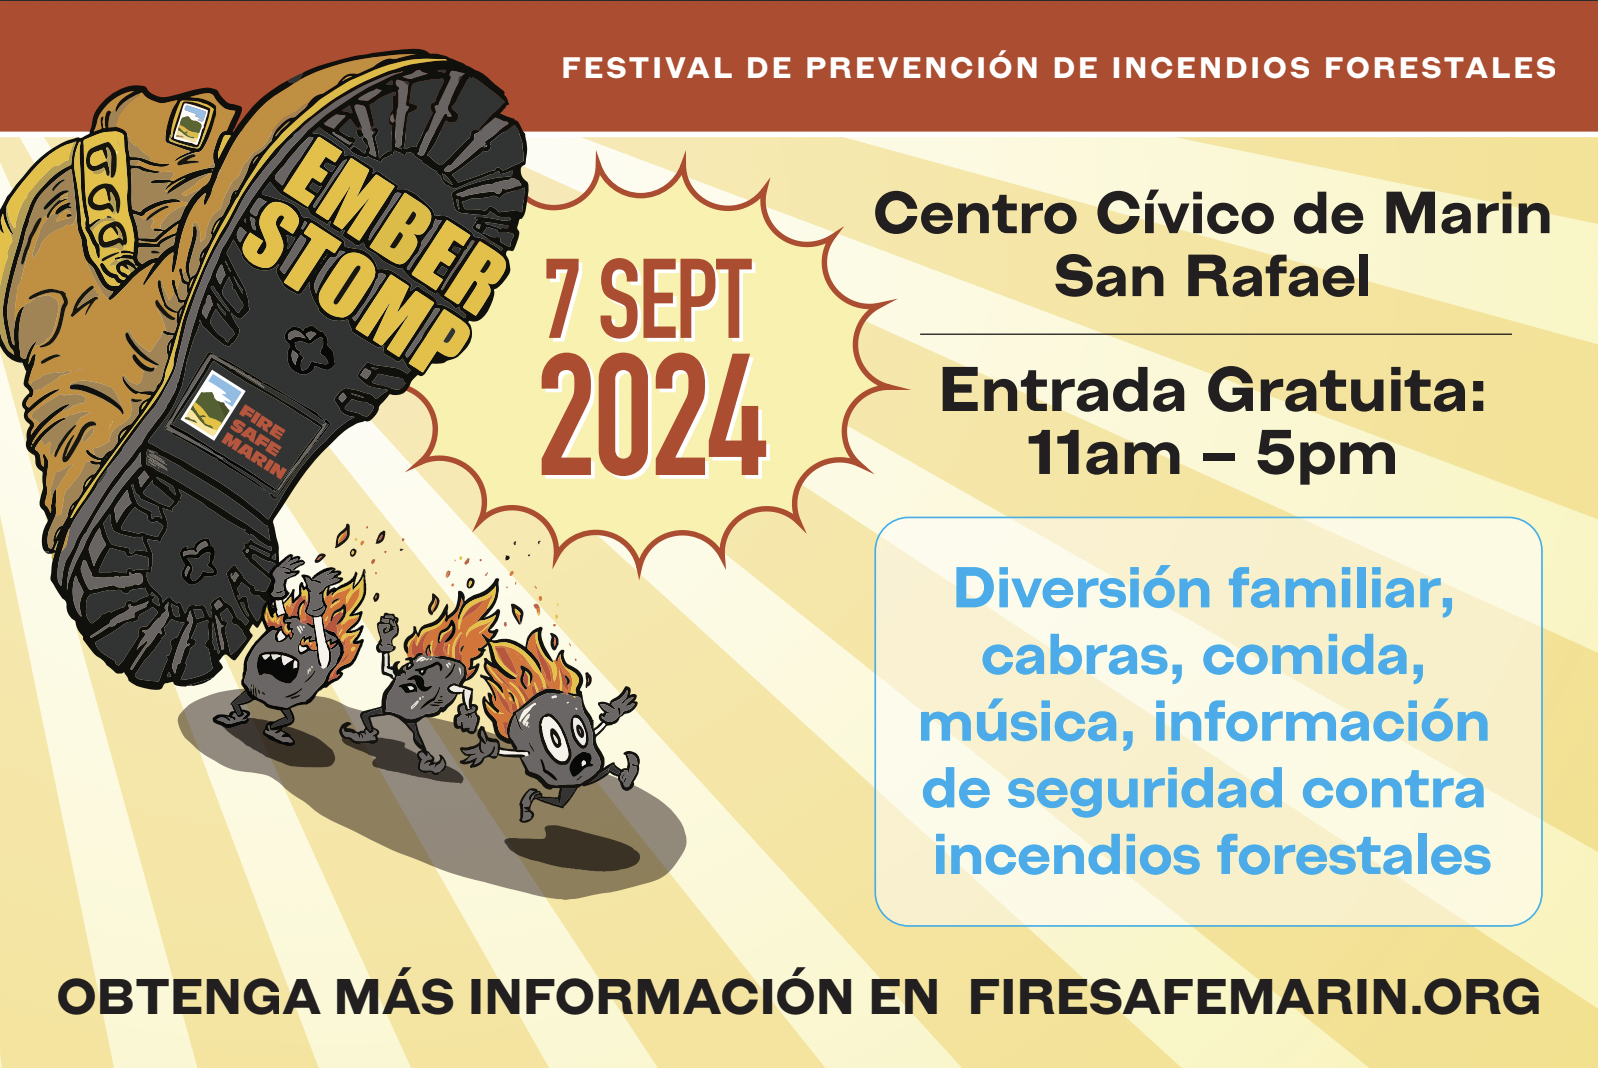 "Ember Stomp 7 Sept 2024, Festival de Prevencion de incendios forestales, Centro Civico de Marin, Entrada Gratuita, 11am to 5pm"